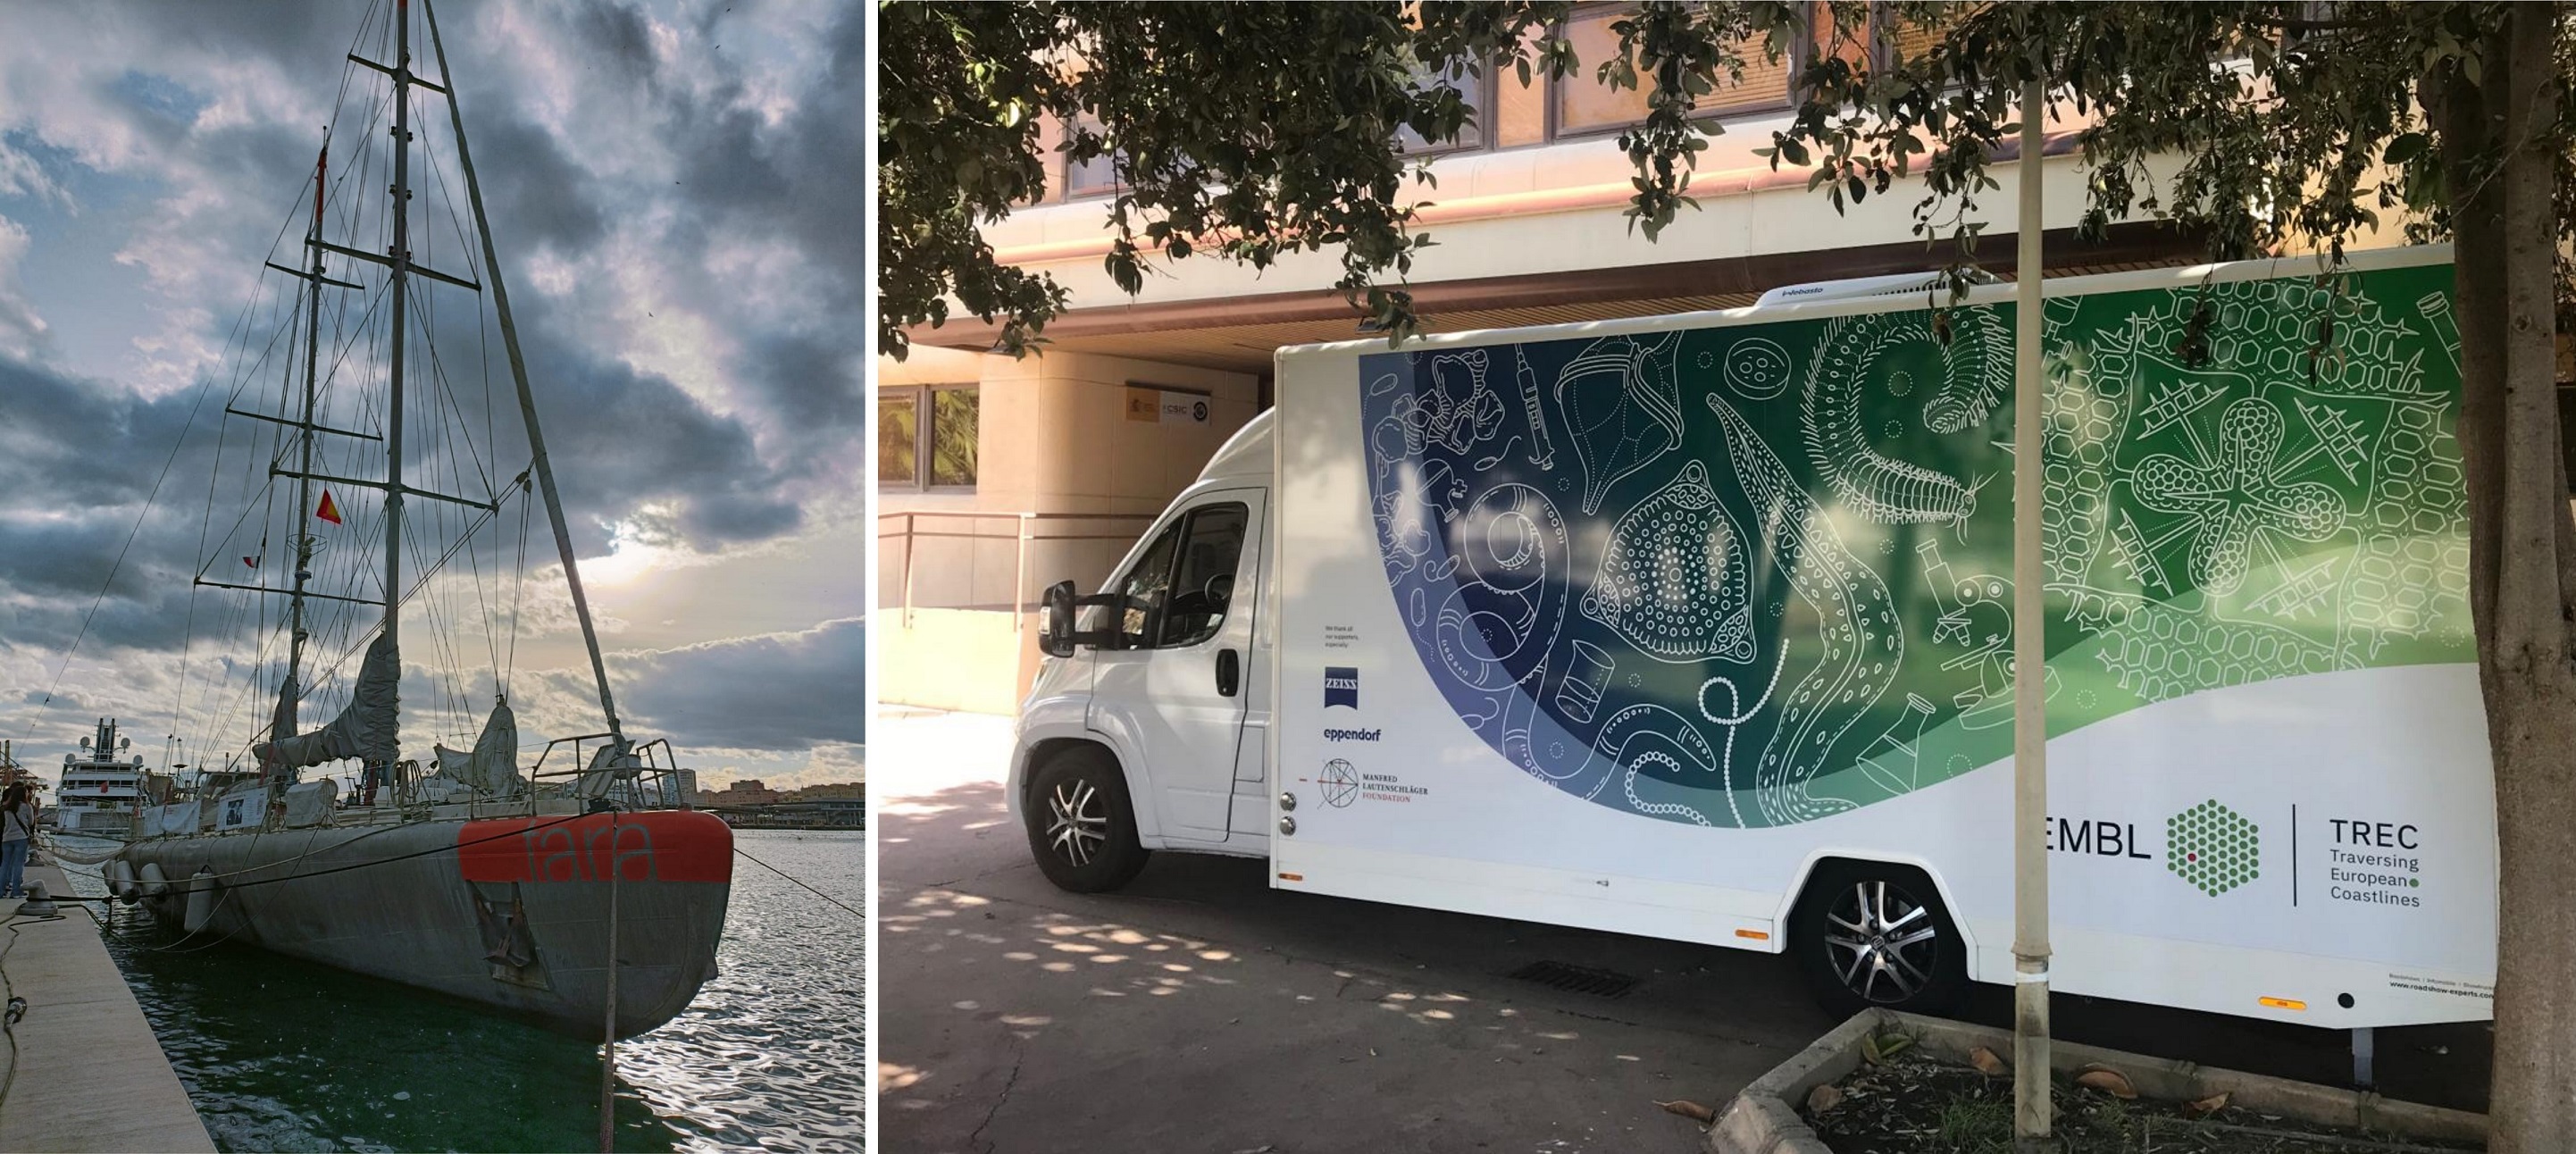 La primera expedición europea que estudia el impacto humano en mares y costas llega a Málaga